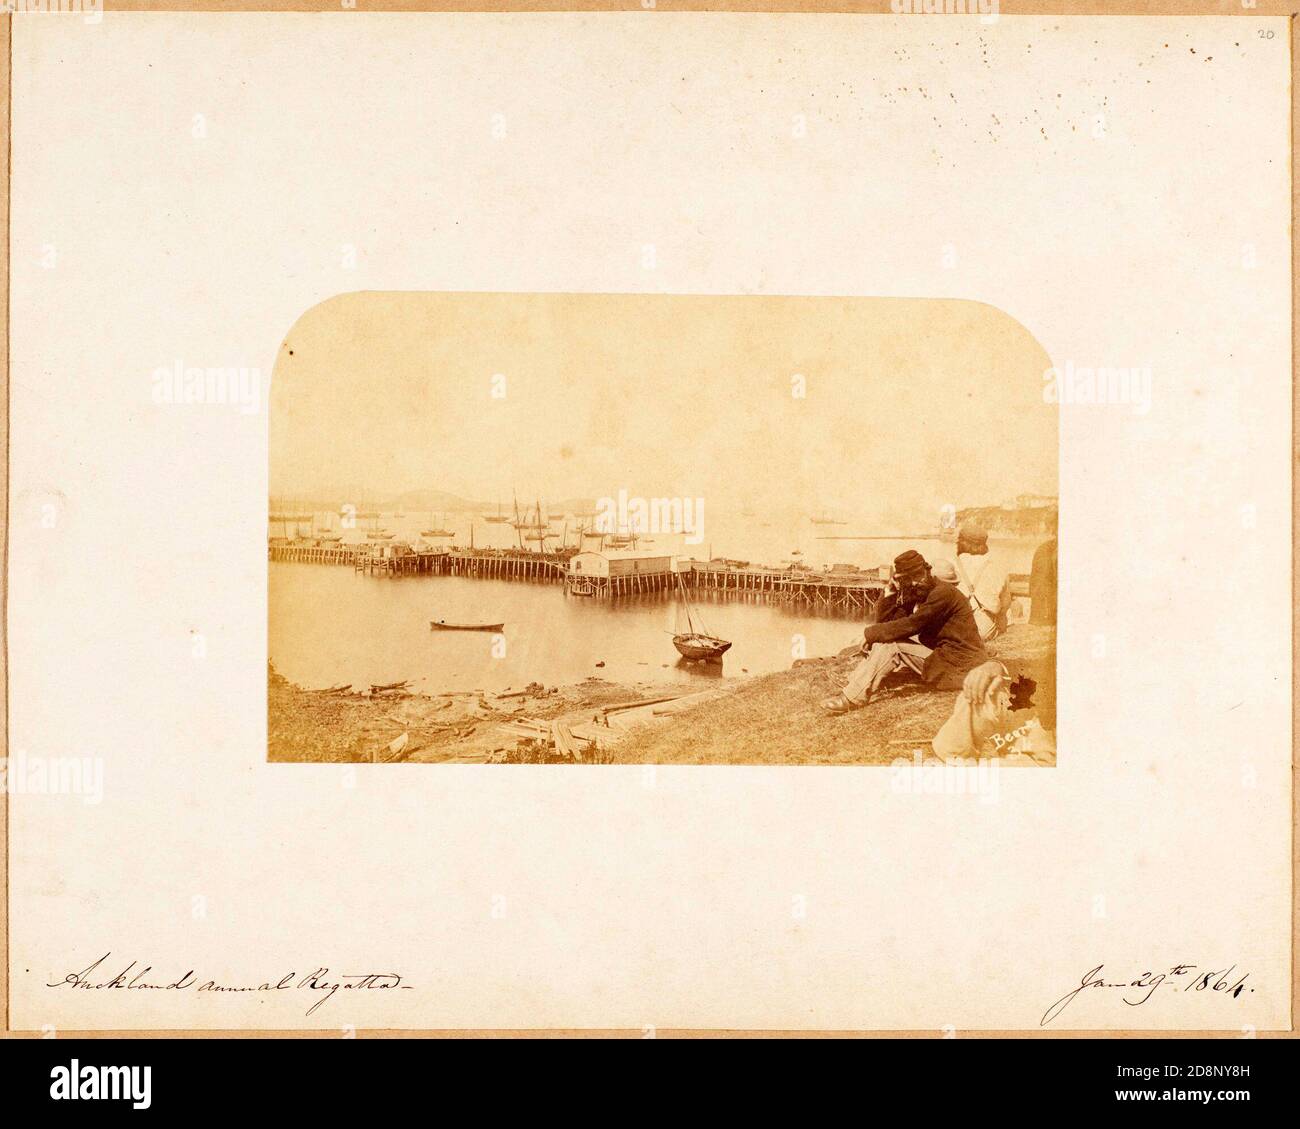 Regata anual de Auckland 29 de enero de 1864 [Queen Street Wharf, mirando desde Smales Point, al pie de Hobson Street, durante la Regata Aniversario de Auckland. Fort Britomart está en el extremo derecho] Foto de stock